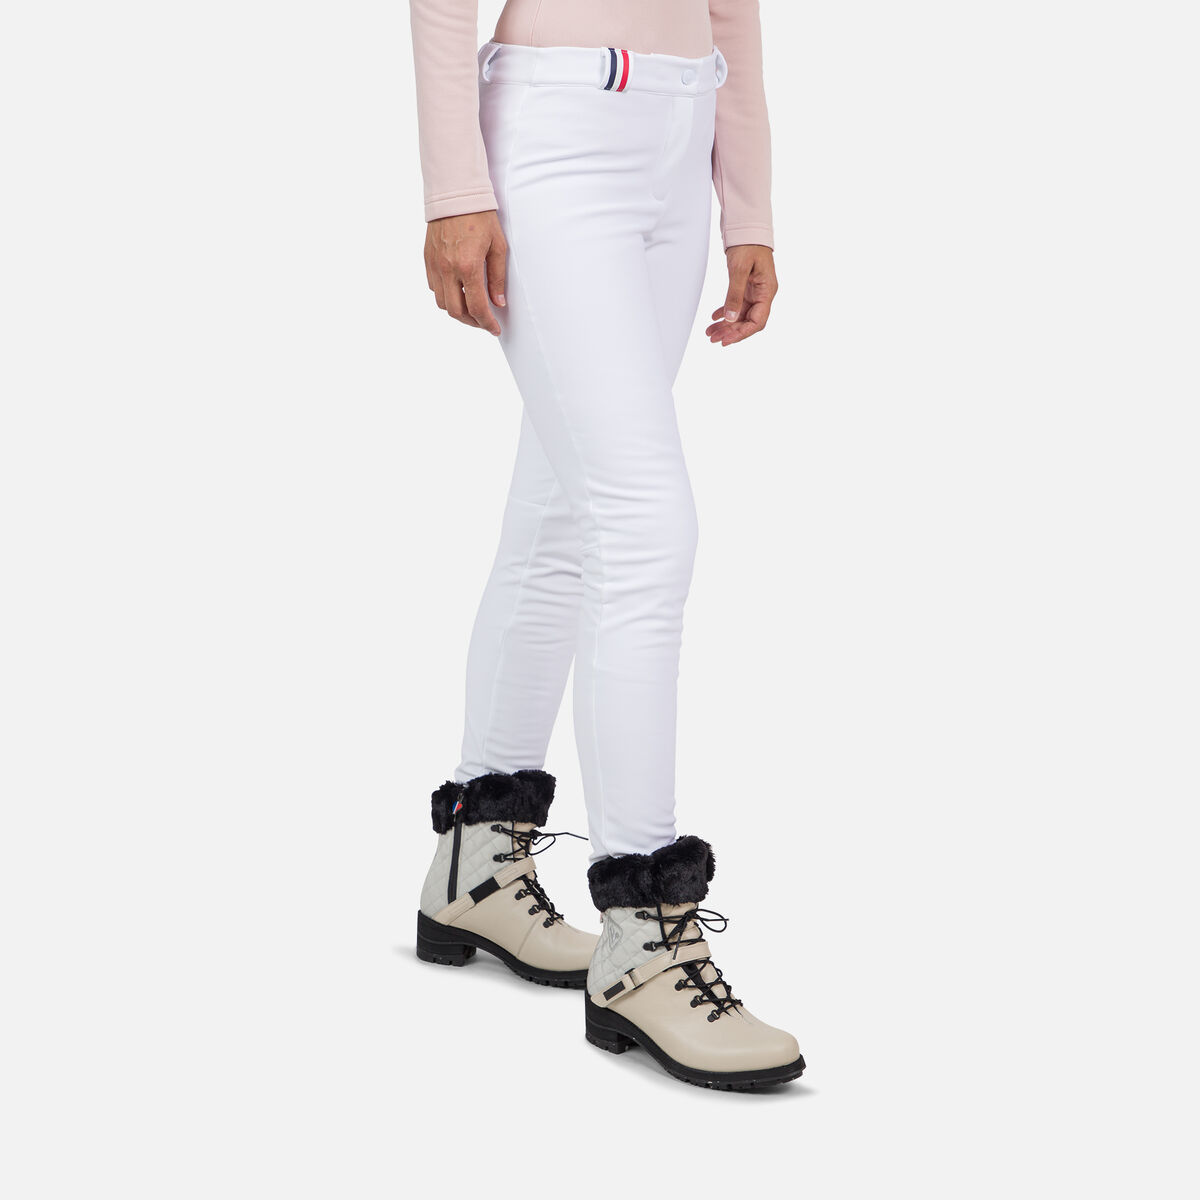 Pantalon de ski femme Rossignol Fuseau - Pantalons de Ski - Textile Femme -  Sports Hiver